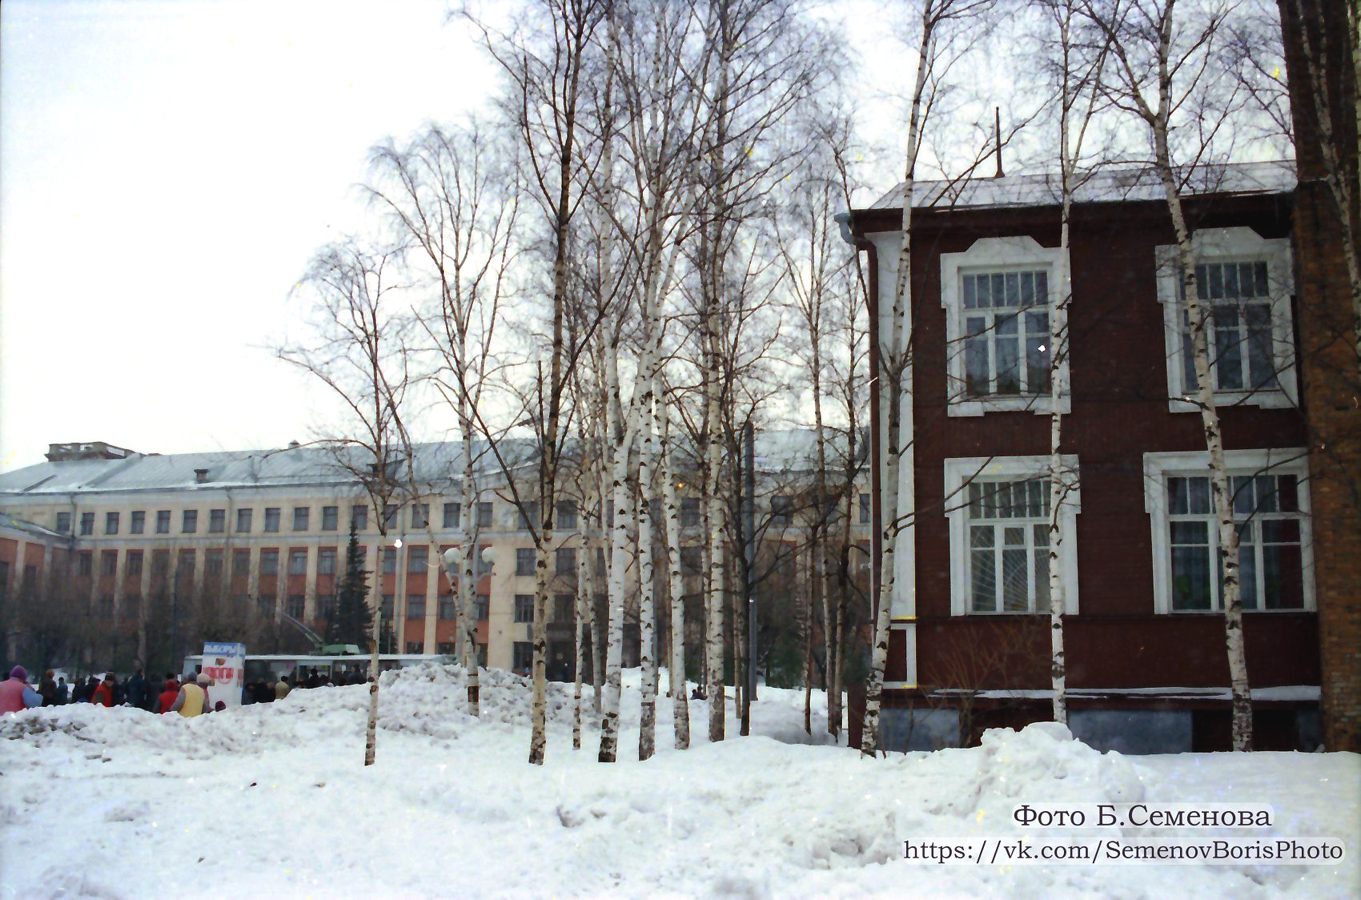 1997. Petroskoi. Kareldrev -trustin rakennus